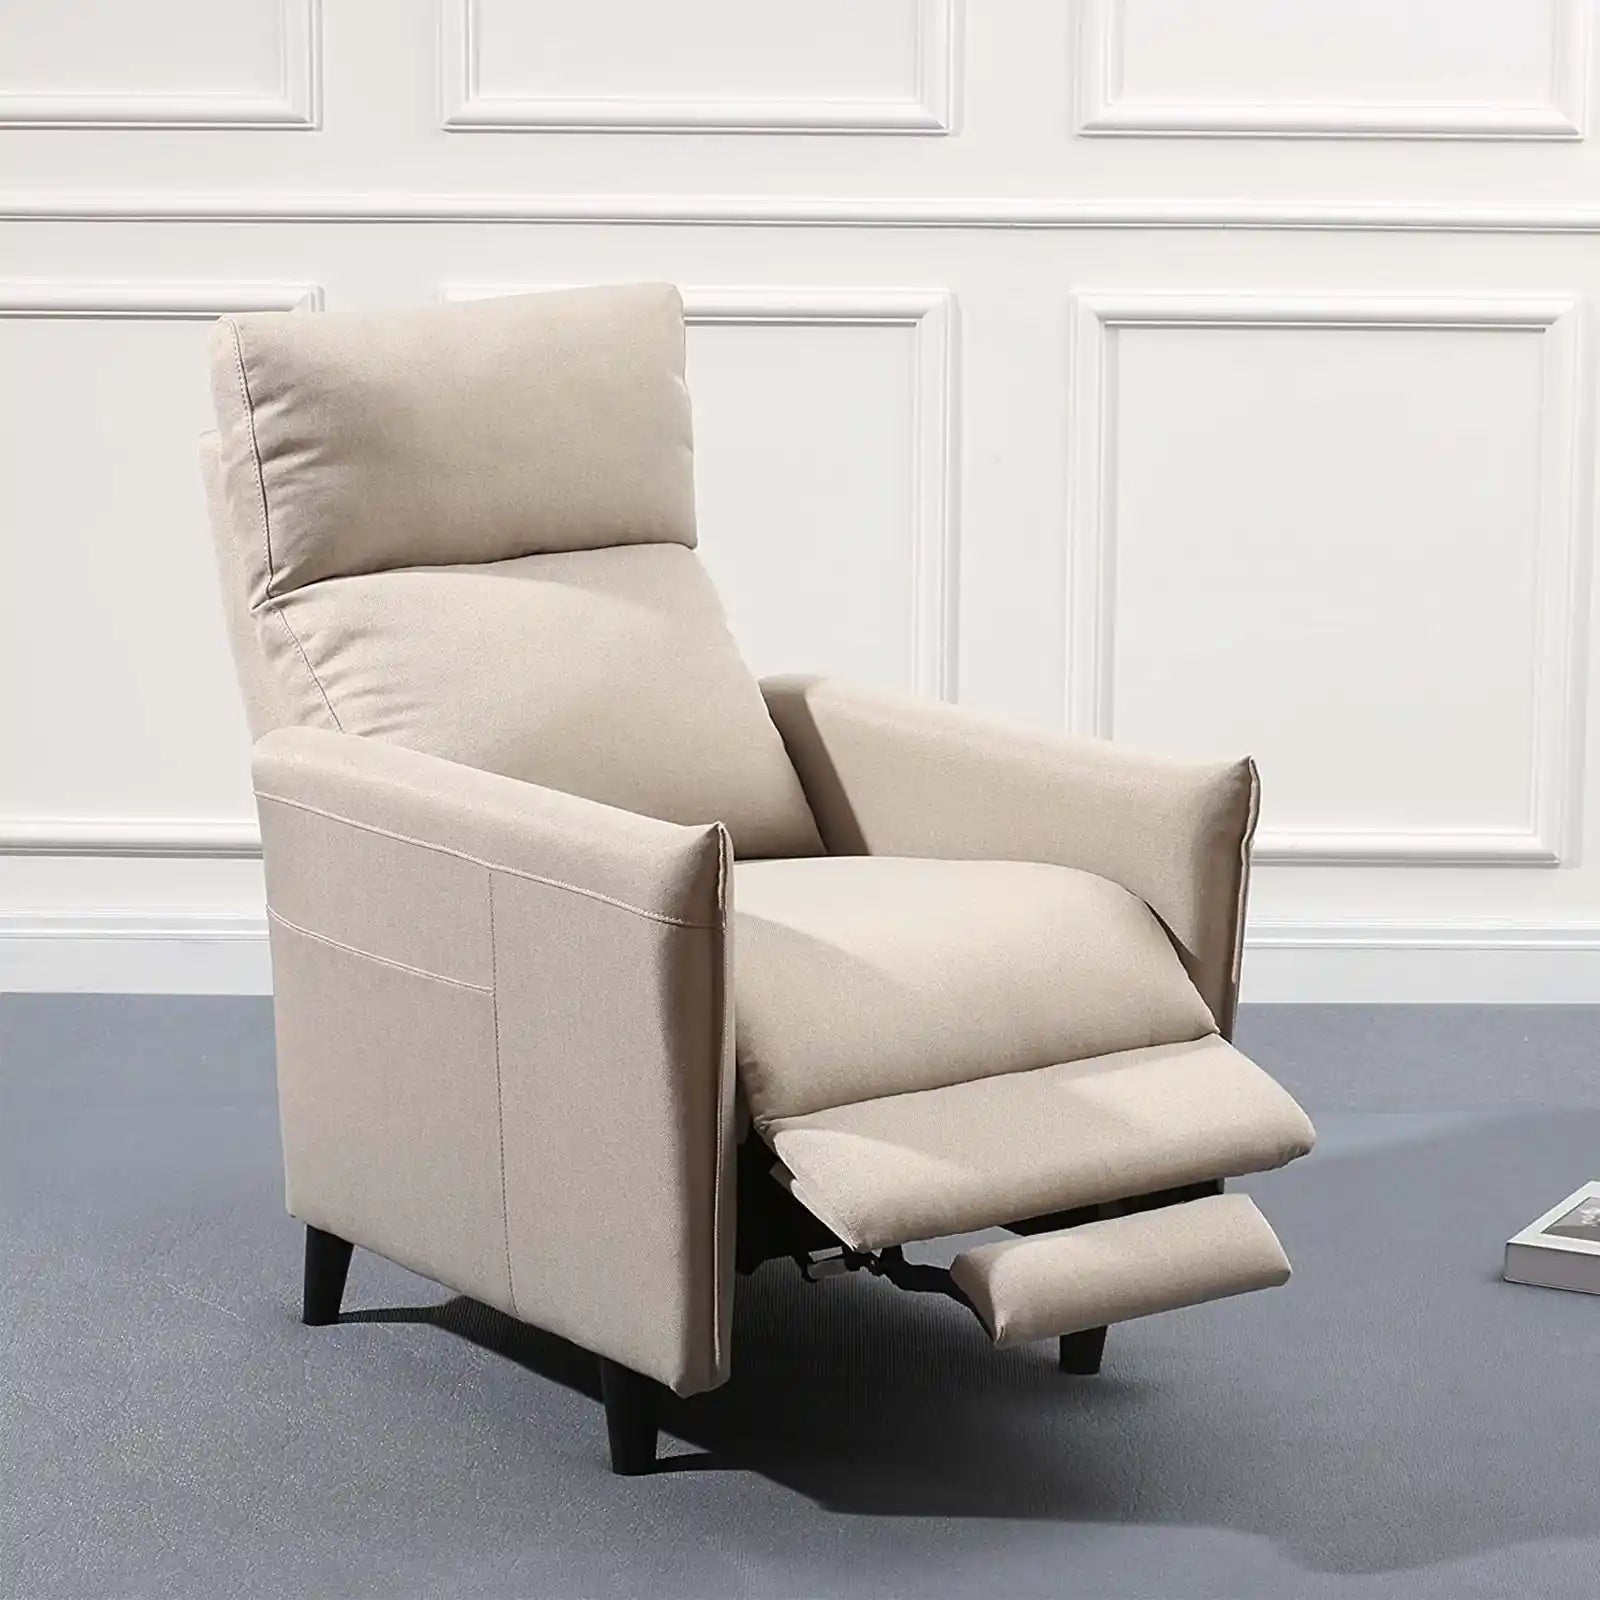 Silla clásica para sala de estar, sillón reclinable de tamaño mediano, sofá reclinable